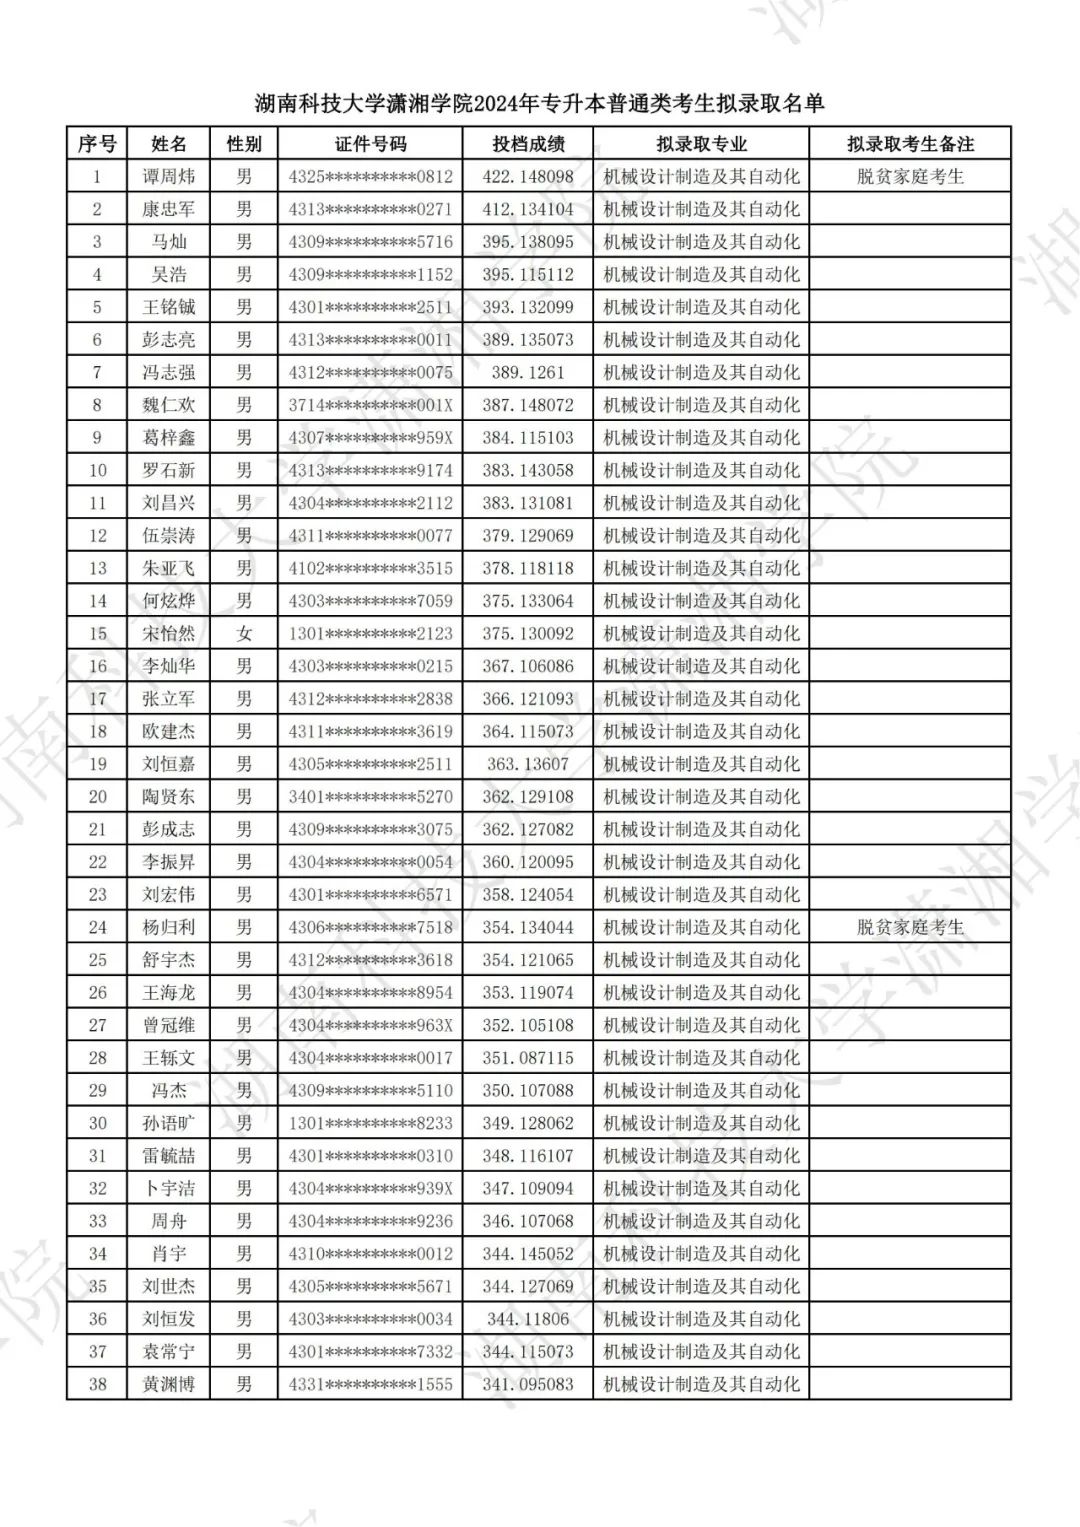 湖南科技大学潇湘学院2024年专升本普通类考生拟录取名单公示(图2)